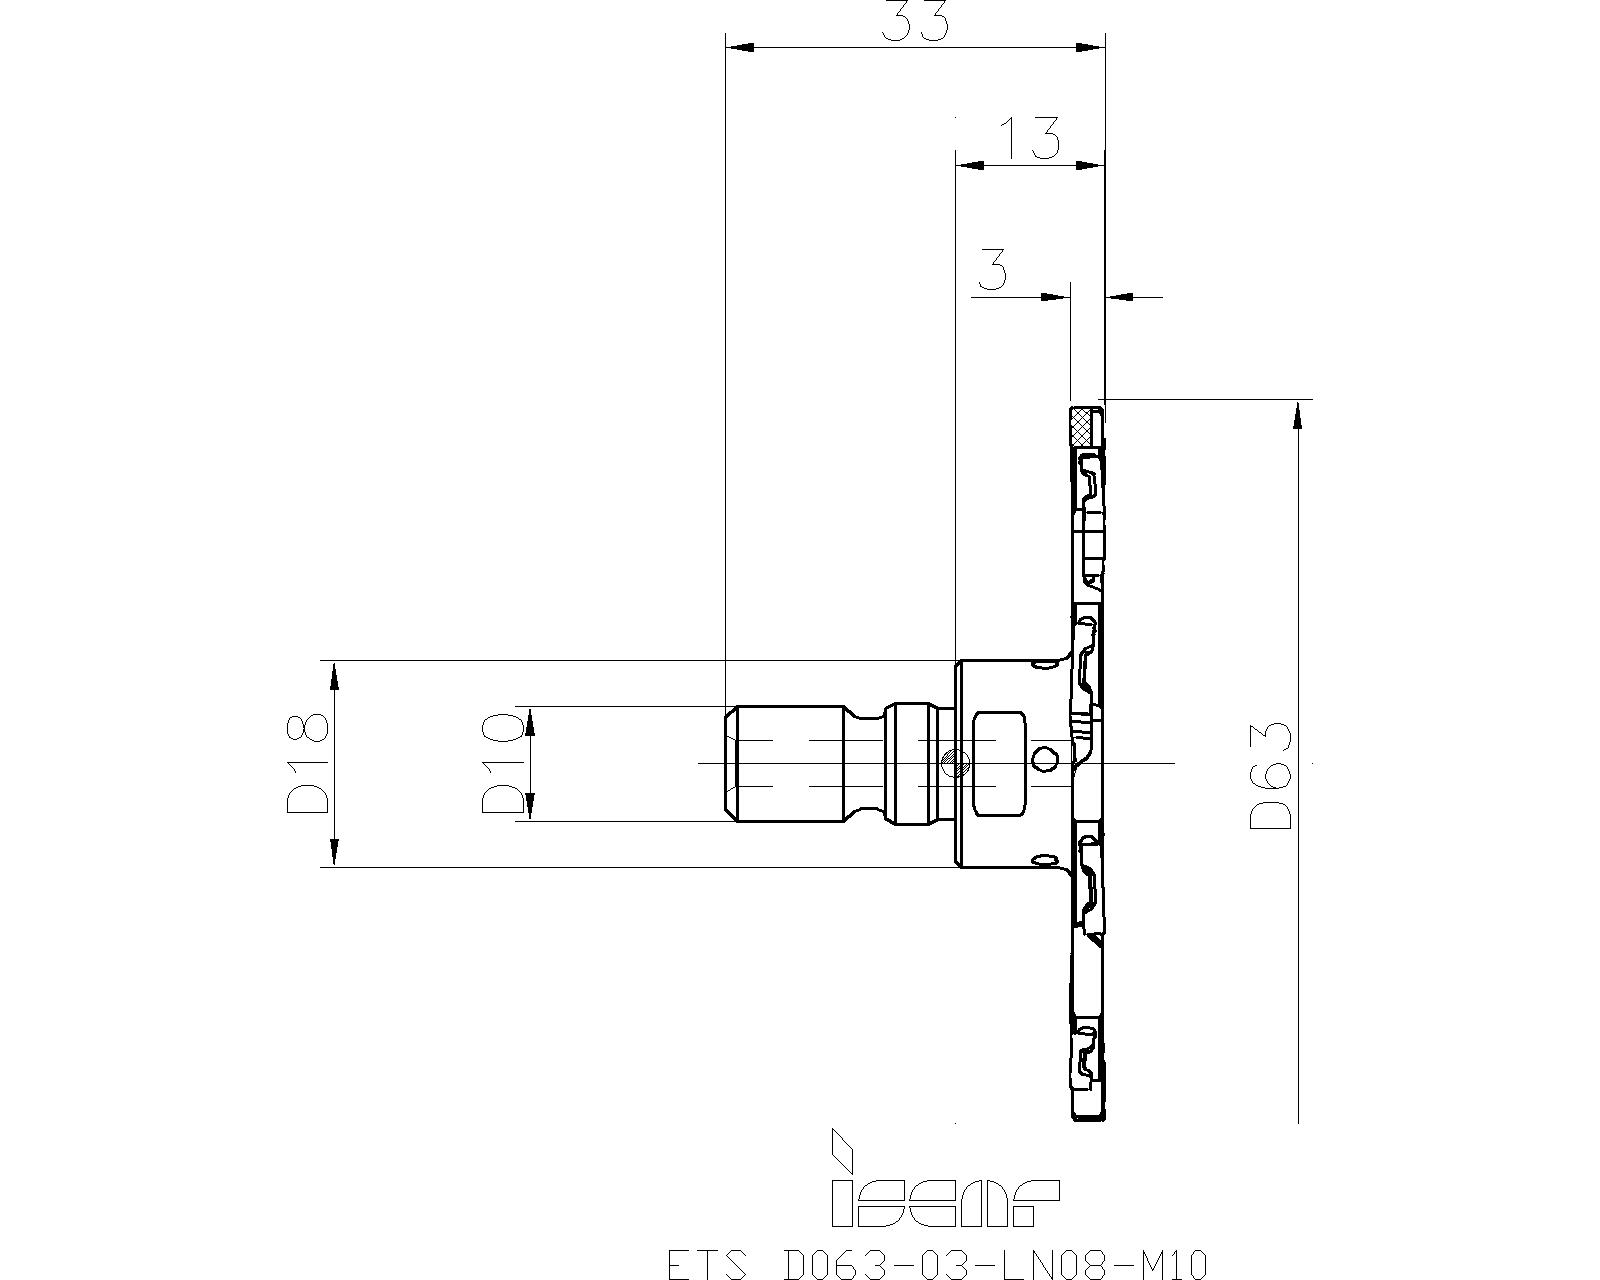 ISCAR ETS D063-04-LN08-M10  Nut + und Scheibenfräser FLEXFIT Schnittstelle NEU 